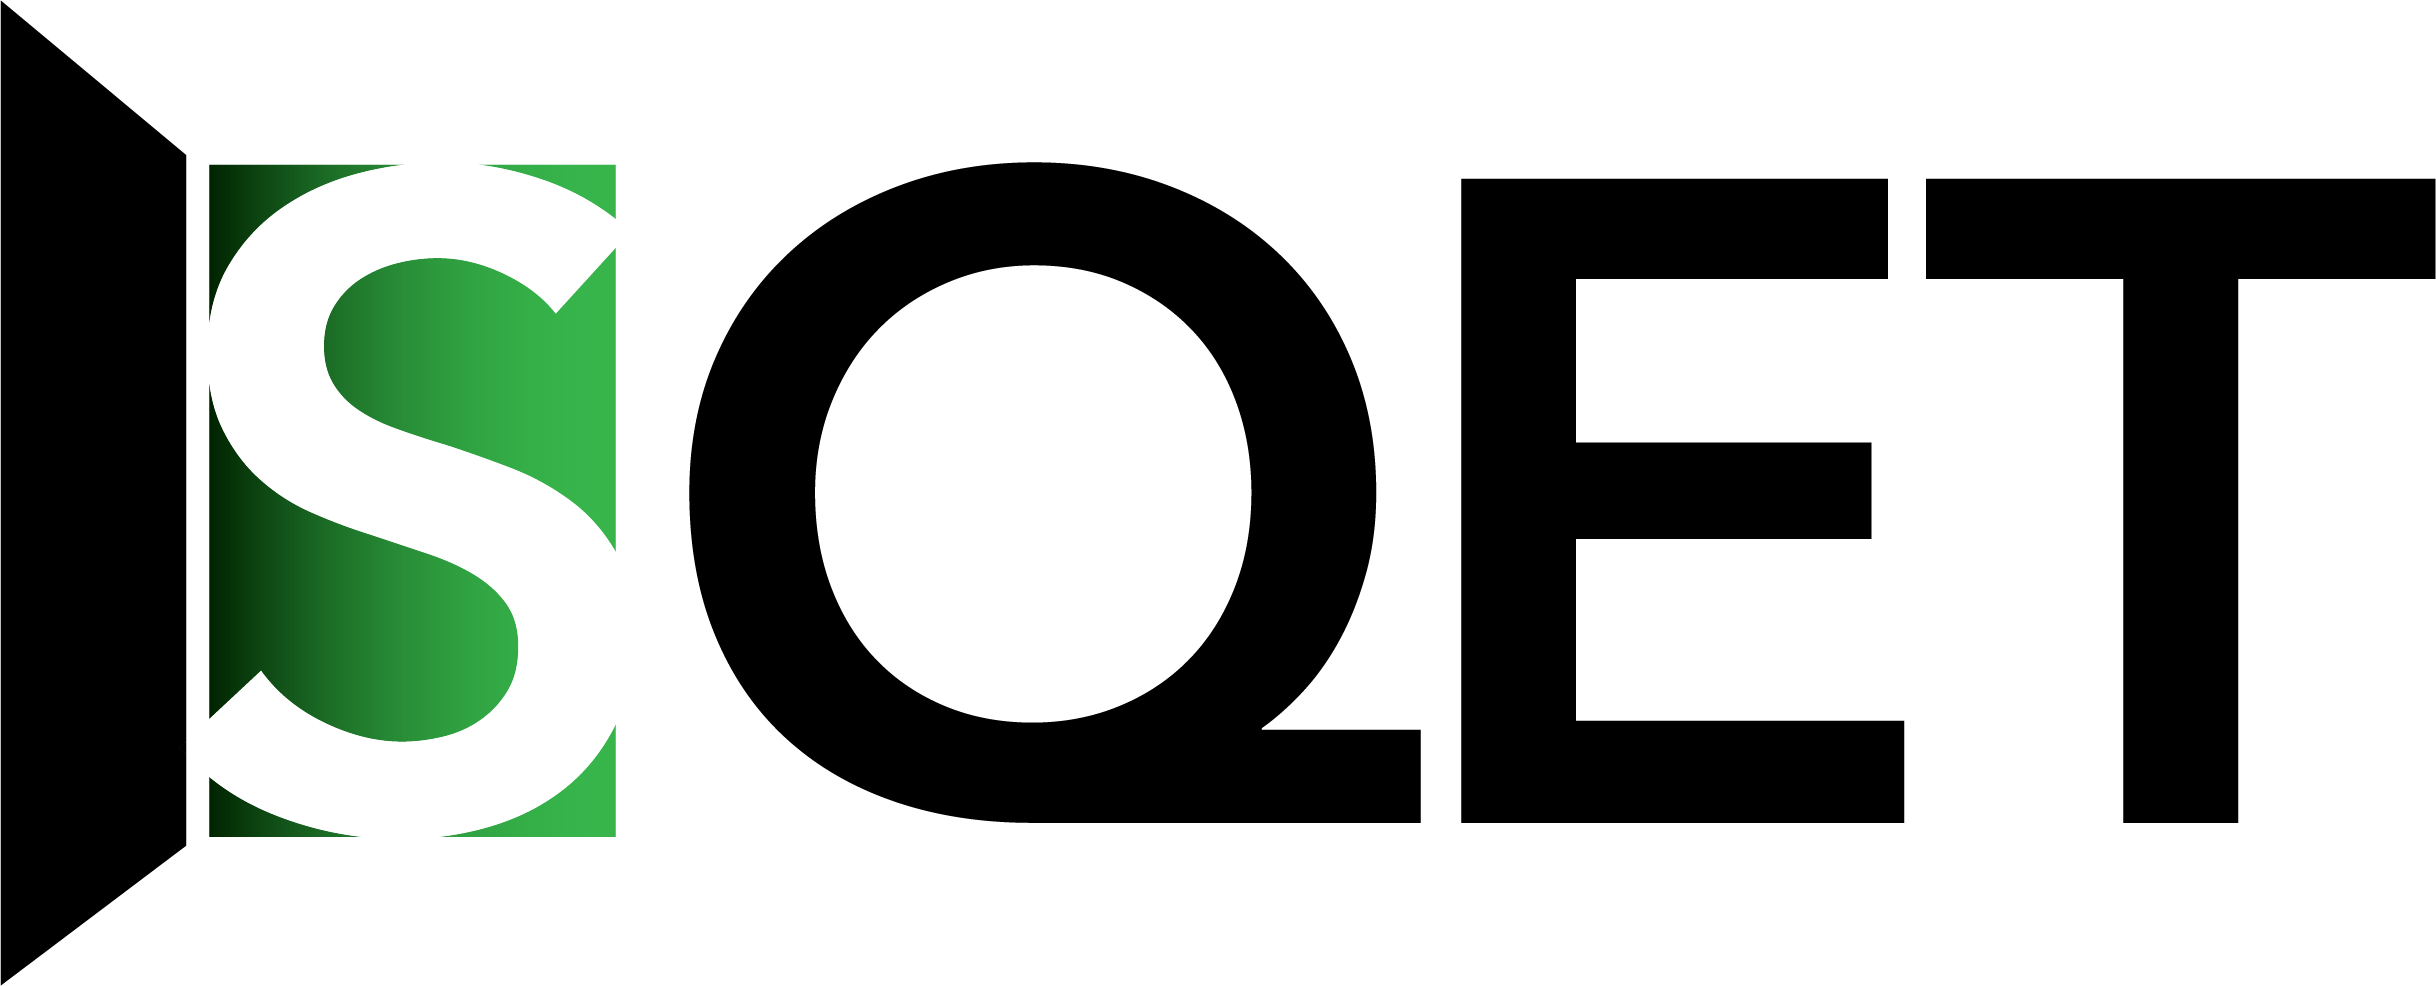 Logo de la Société québécoise d'études théâtrale, dont la première lettre s'inscrit dans une porte ouverte. 